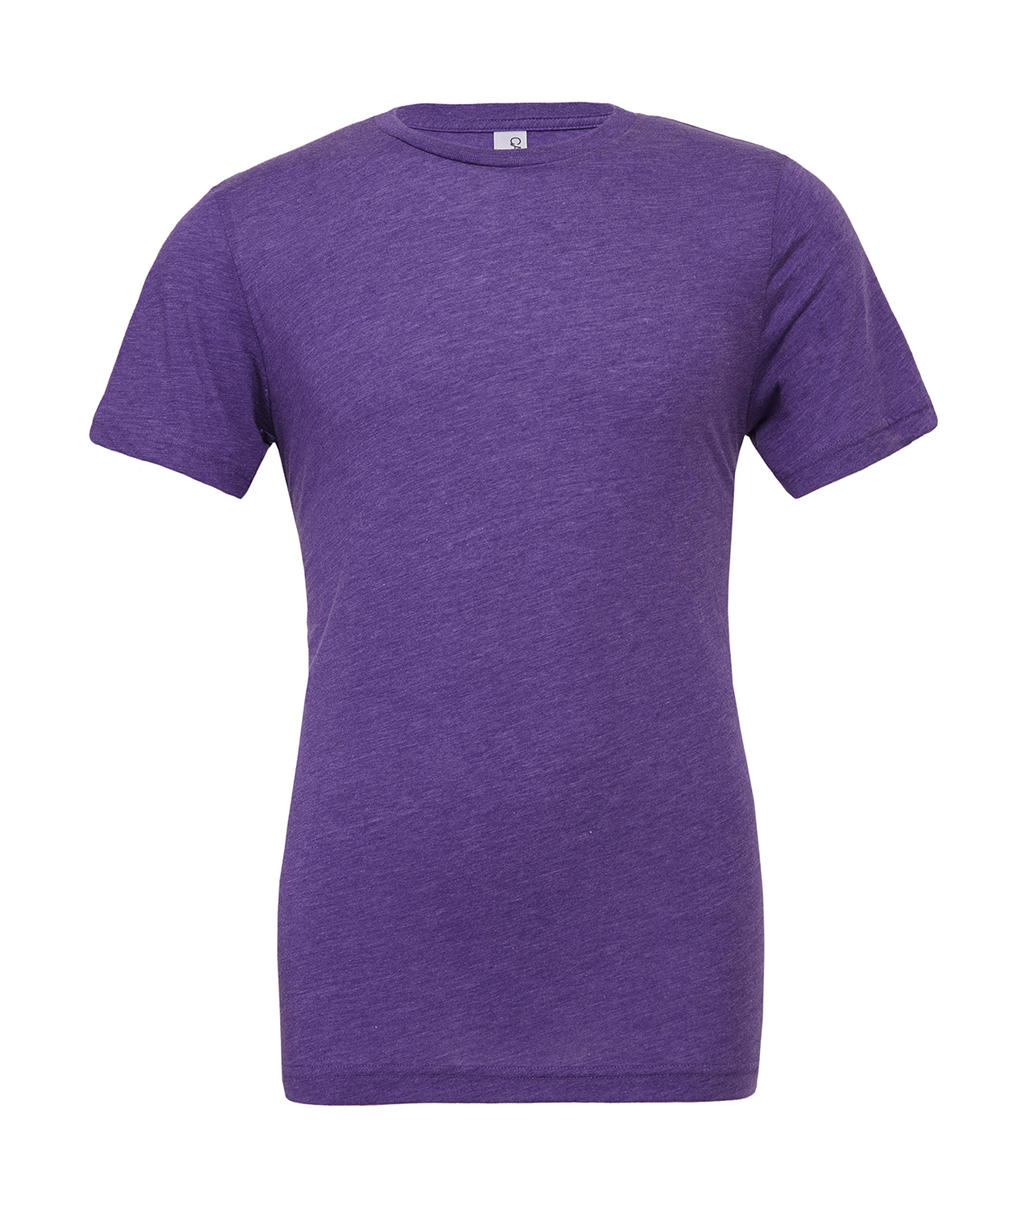 Unisex tričko Triblend - purple triblend